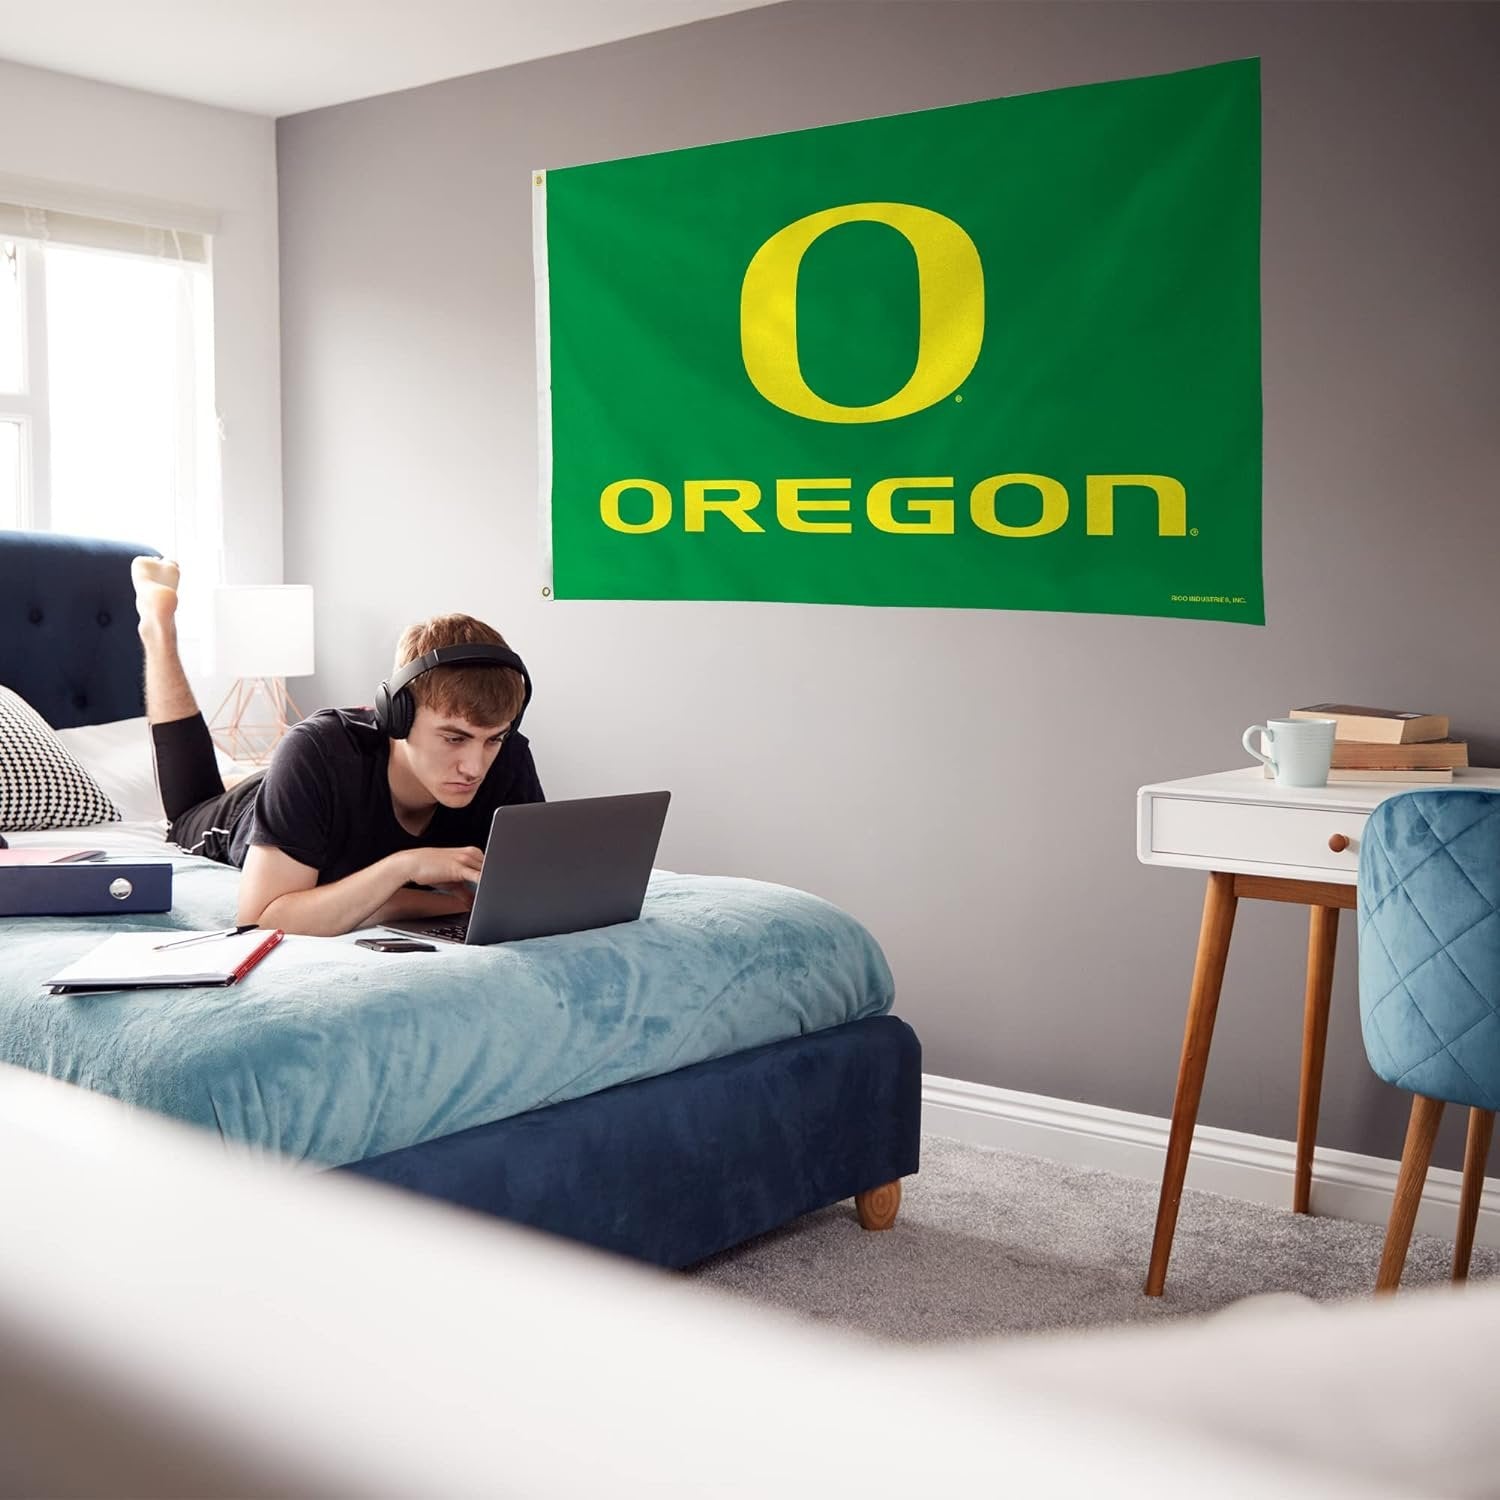 University of Oregon Ducks Premium 3x5 Feet Flag Banner Metal Grommets Outdoor Indoor